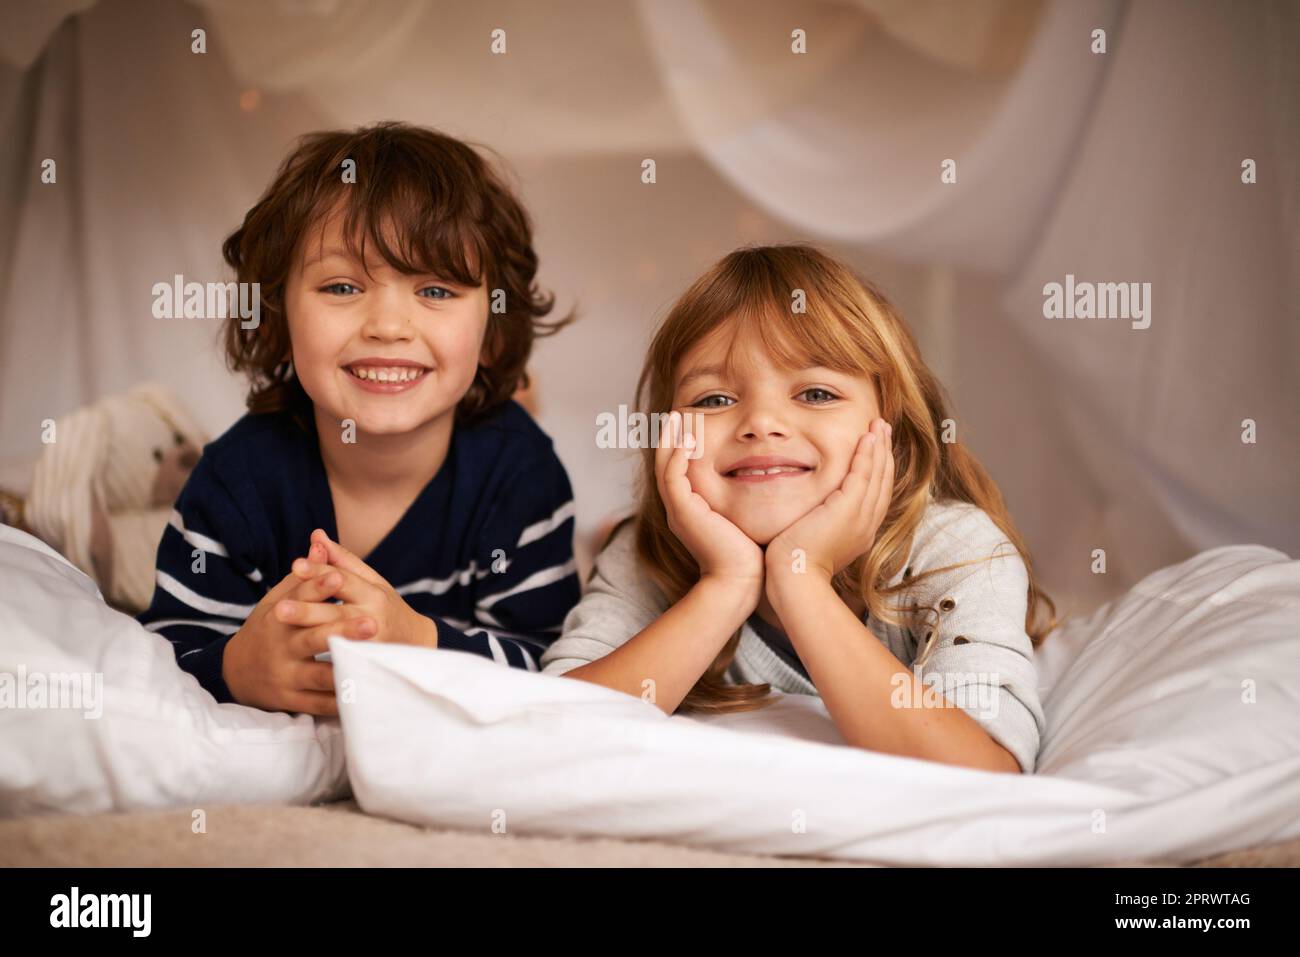 Weil ich einen Bruder habe, habe ich immer einen besten Freund. Porträt zweier entzückender Geschwister, die auf ihrem Bett liegen. Stockfoto